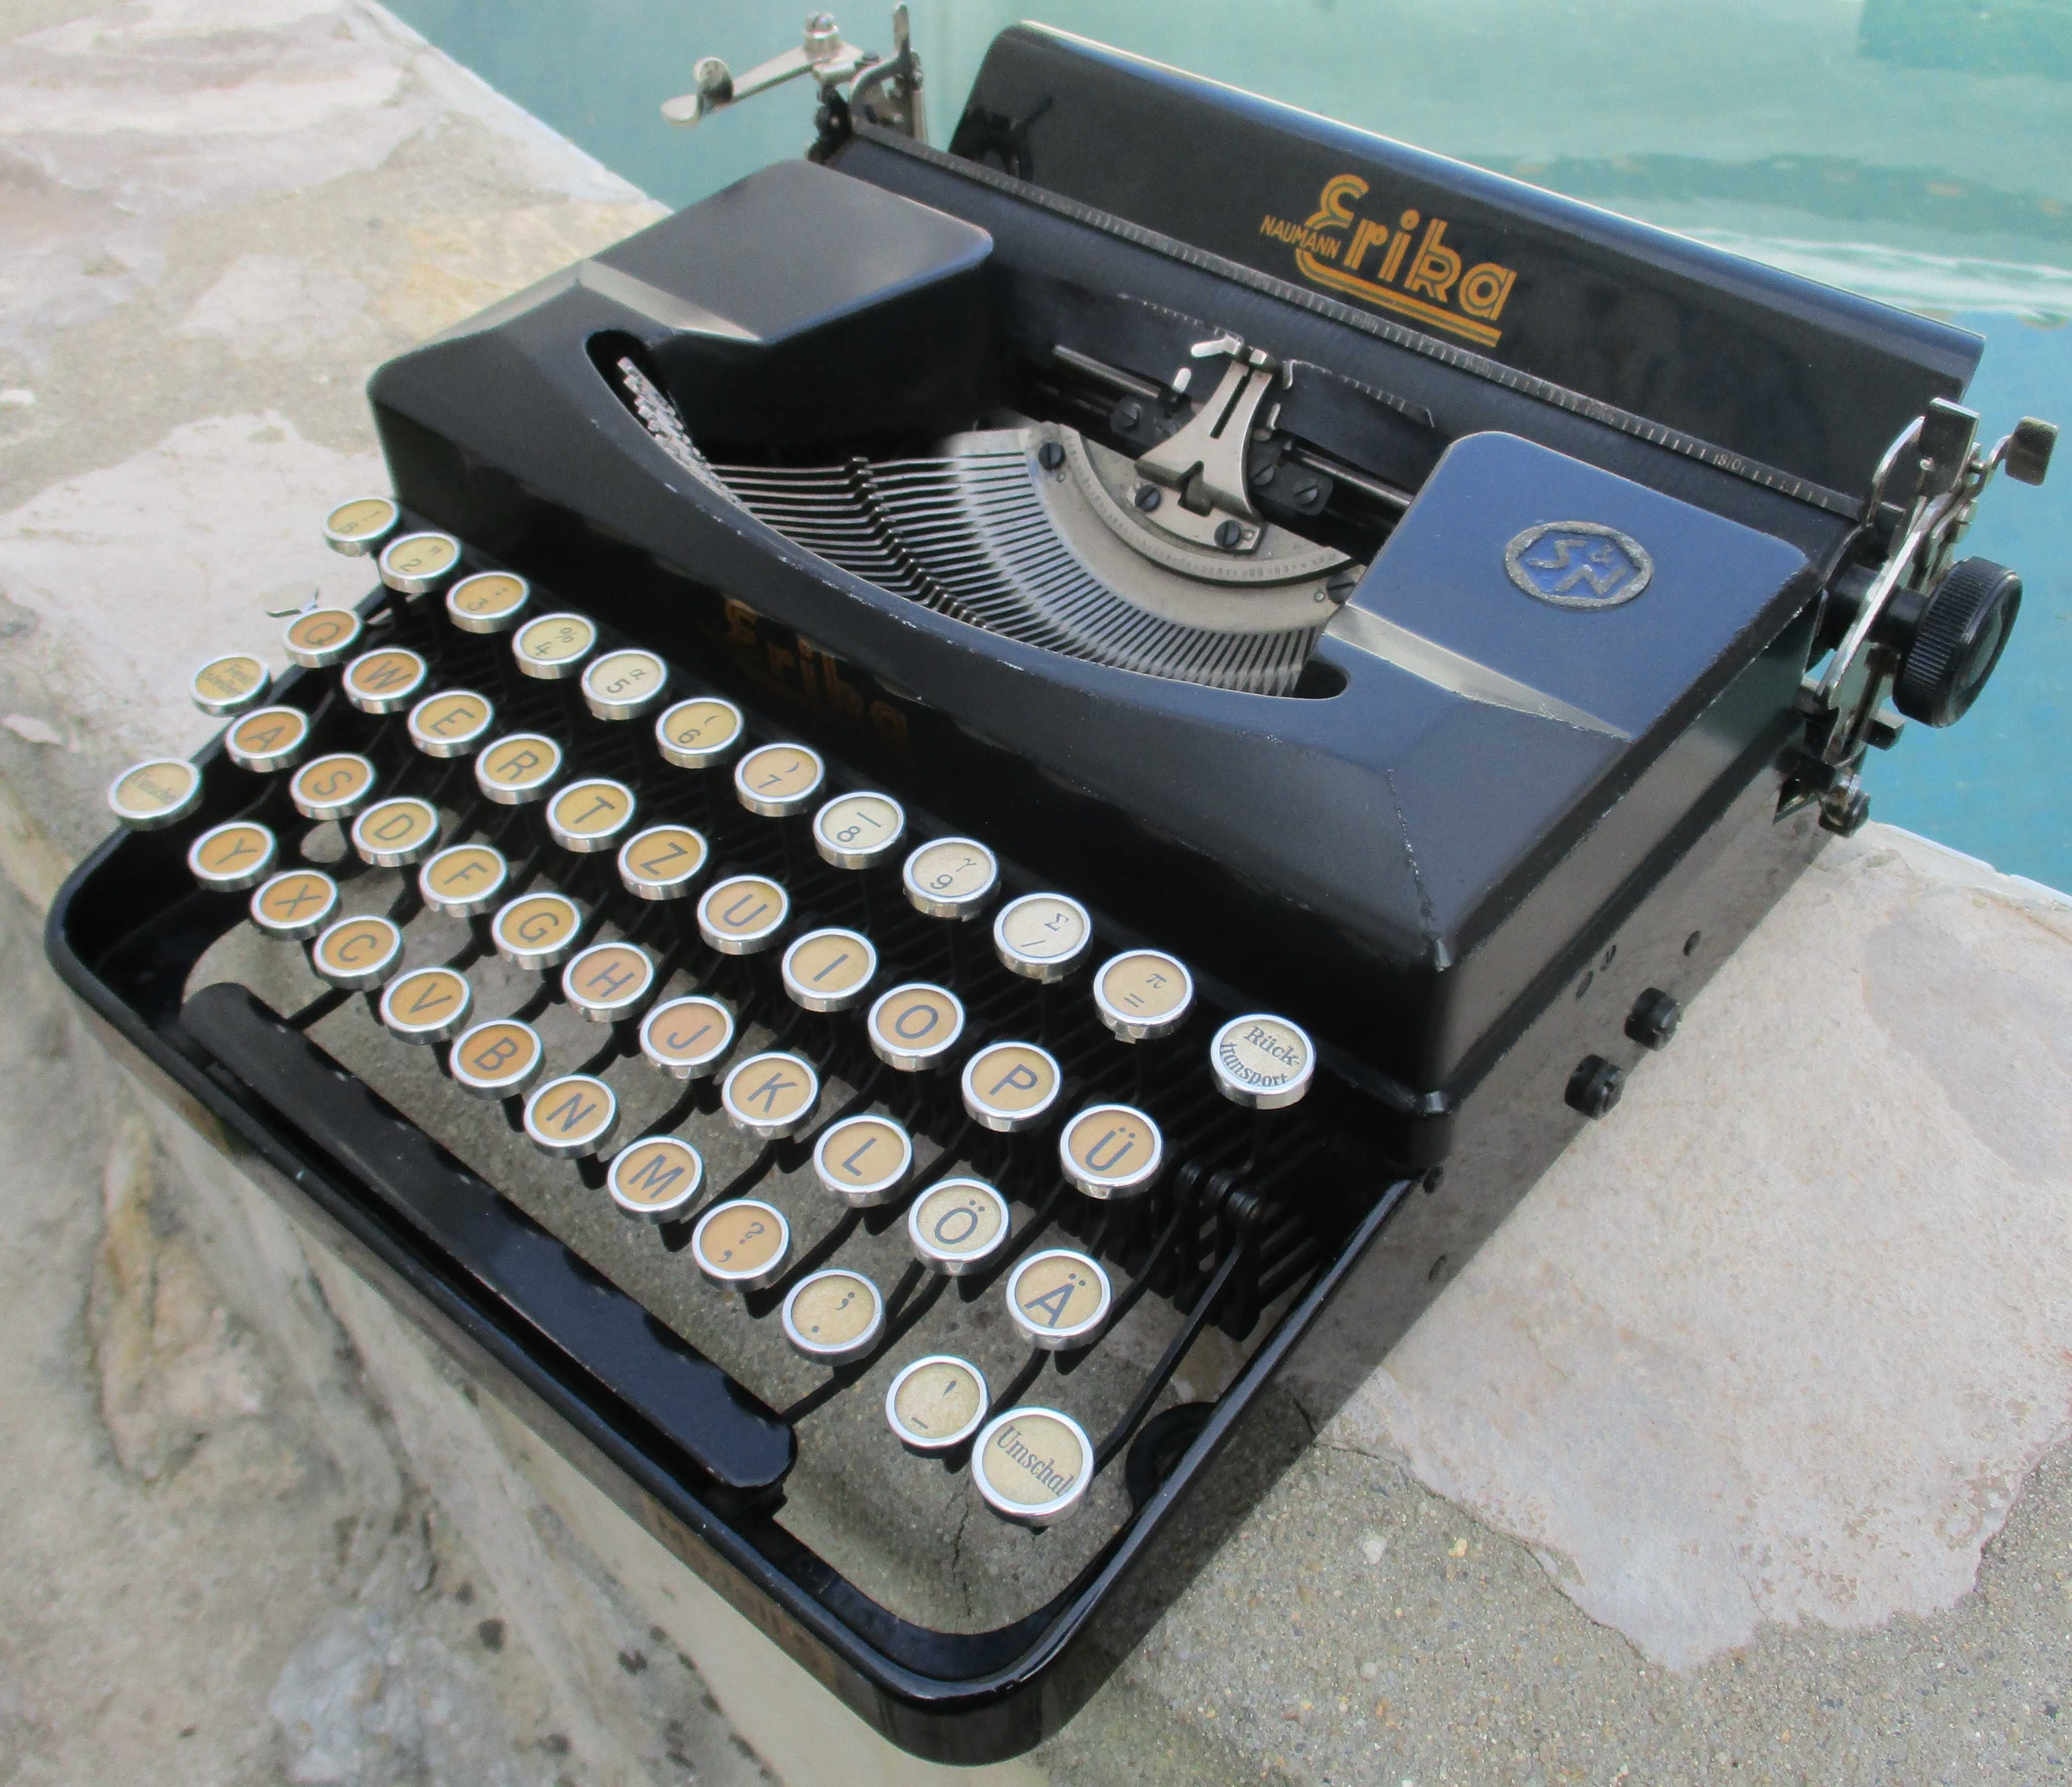 Maquina de escrever muito antiga